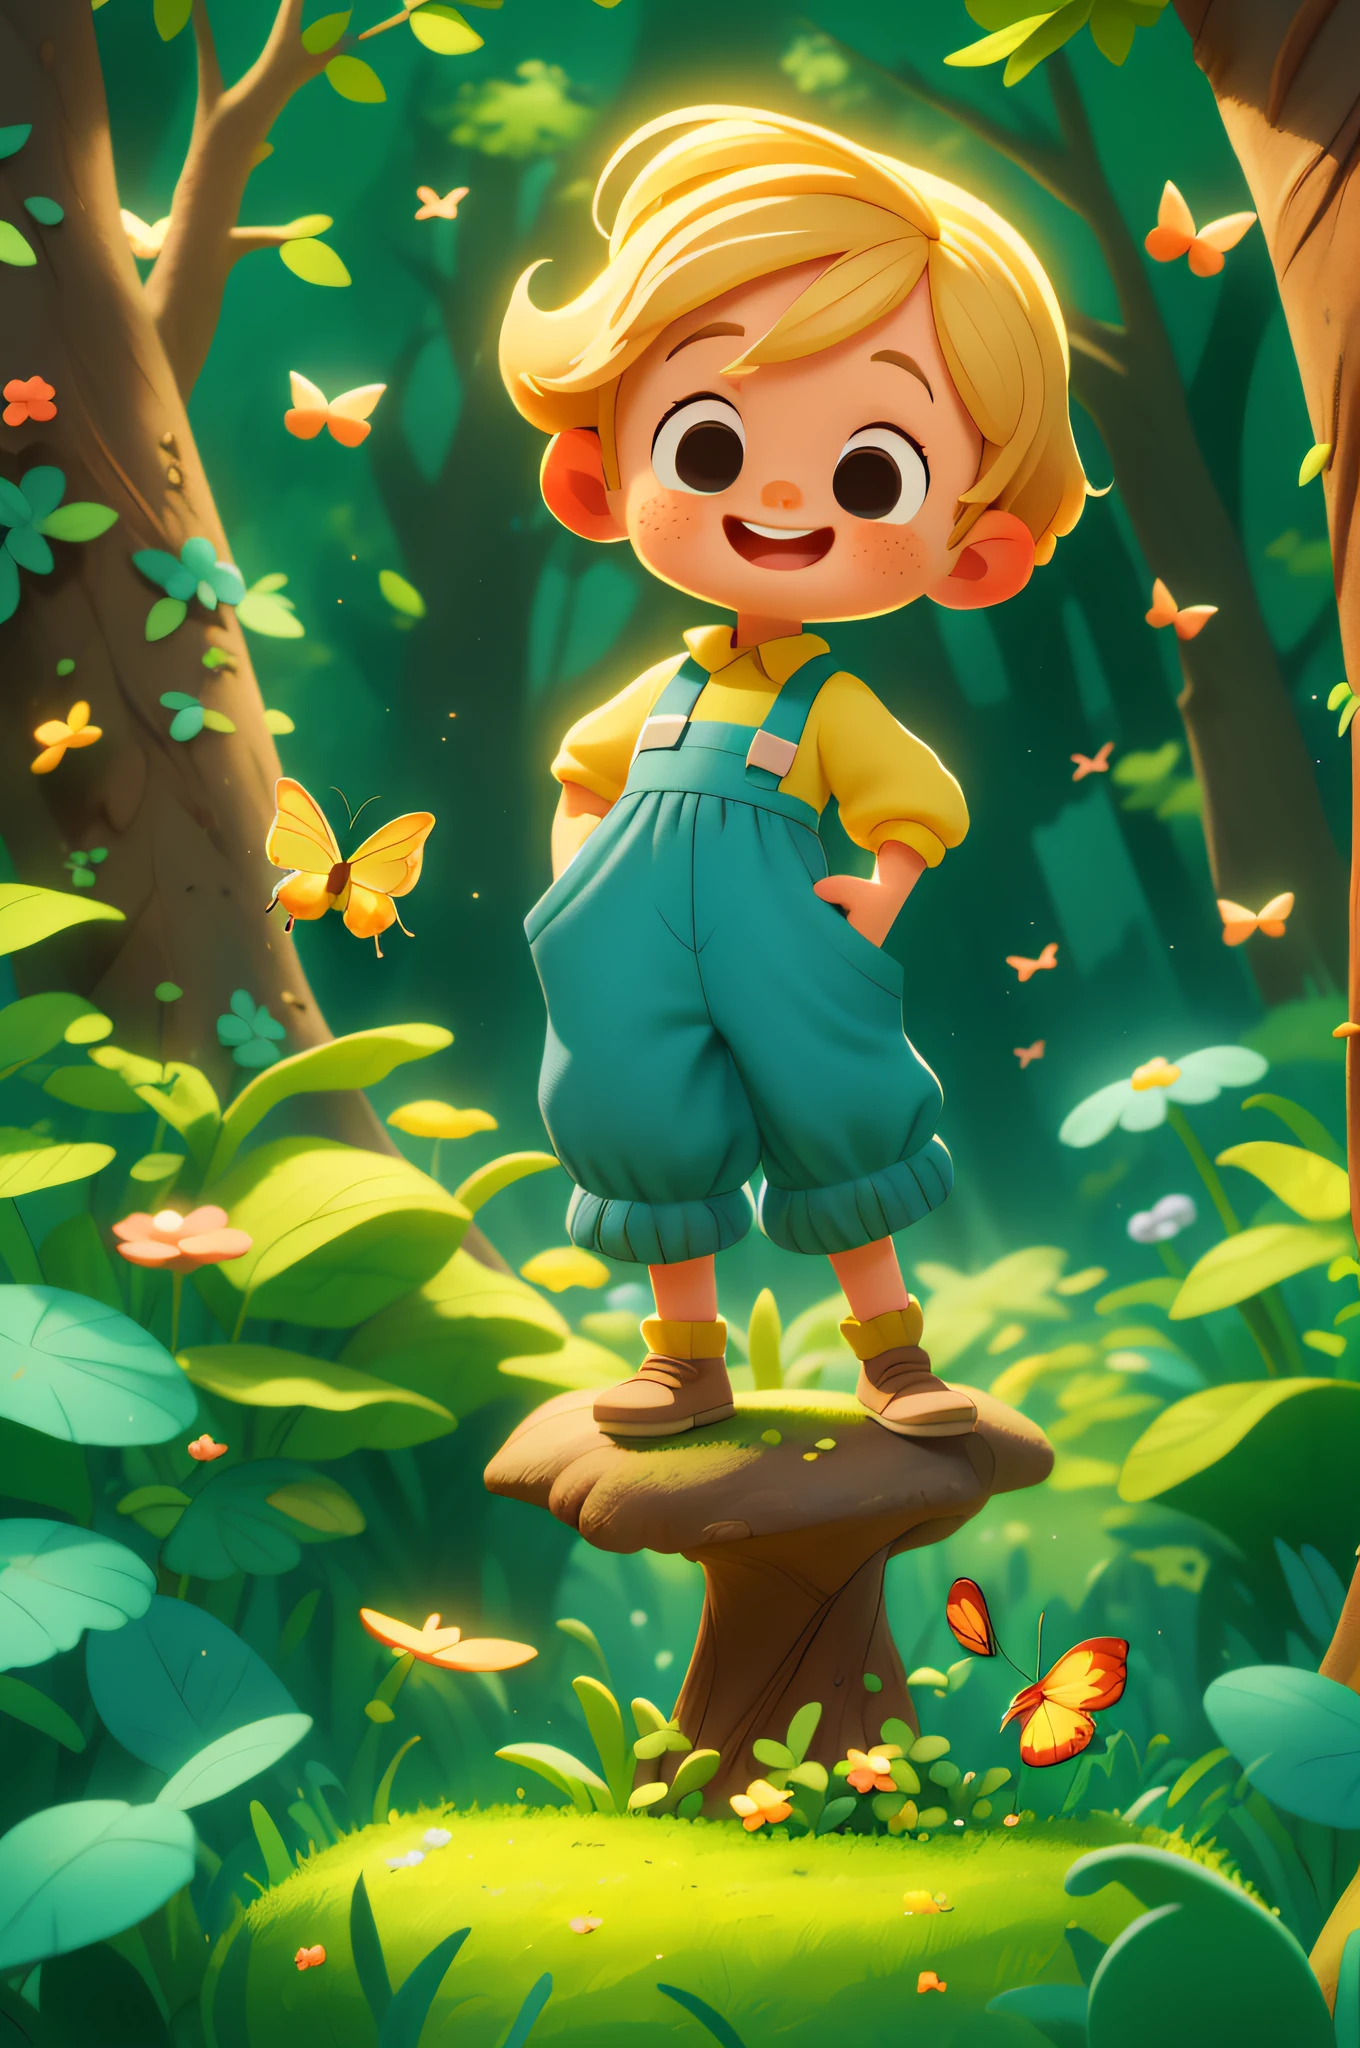 Un hermoso niño feliz de pie, cabello corto rubio, vistiendo un traje espacial azul, jugando con una mariposa, Al aire libre, bosque de fondo, , tono, estilo pixar, 3D, cartono, cara detallada, asimétrico, frente a un gran árbol, lleno de luces doradas a su alrededor